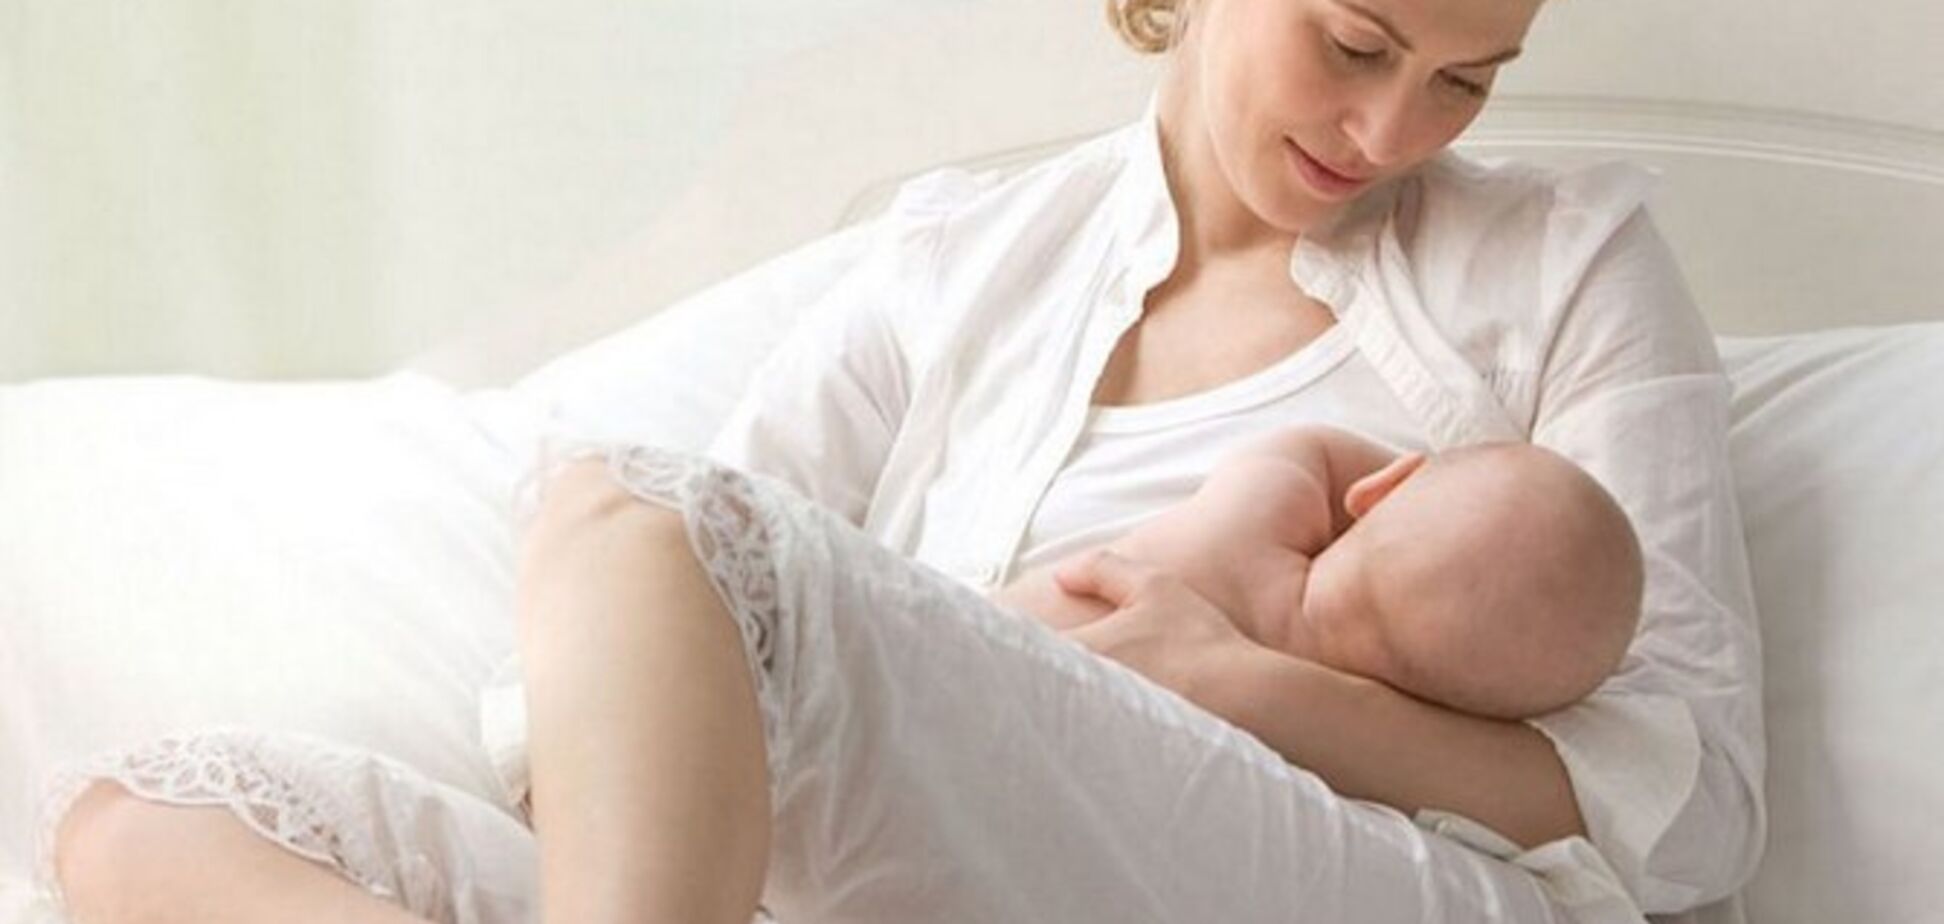 Грудное молоко может защитить от одной из самых тяжелых инфекций новорожденного